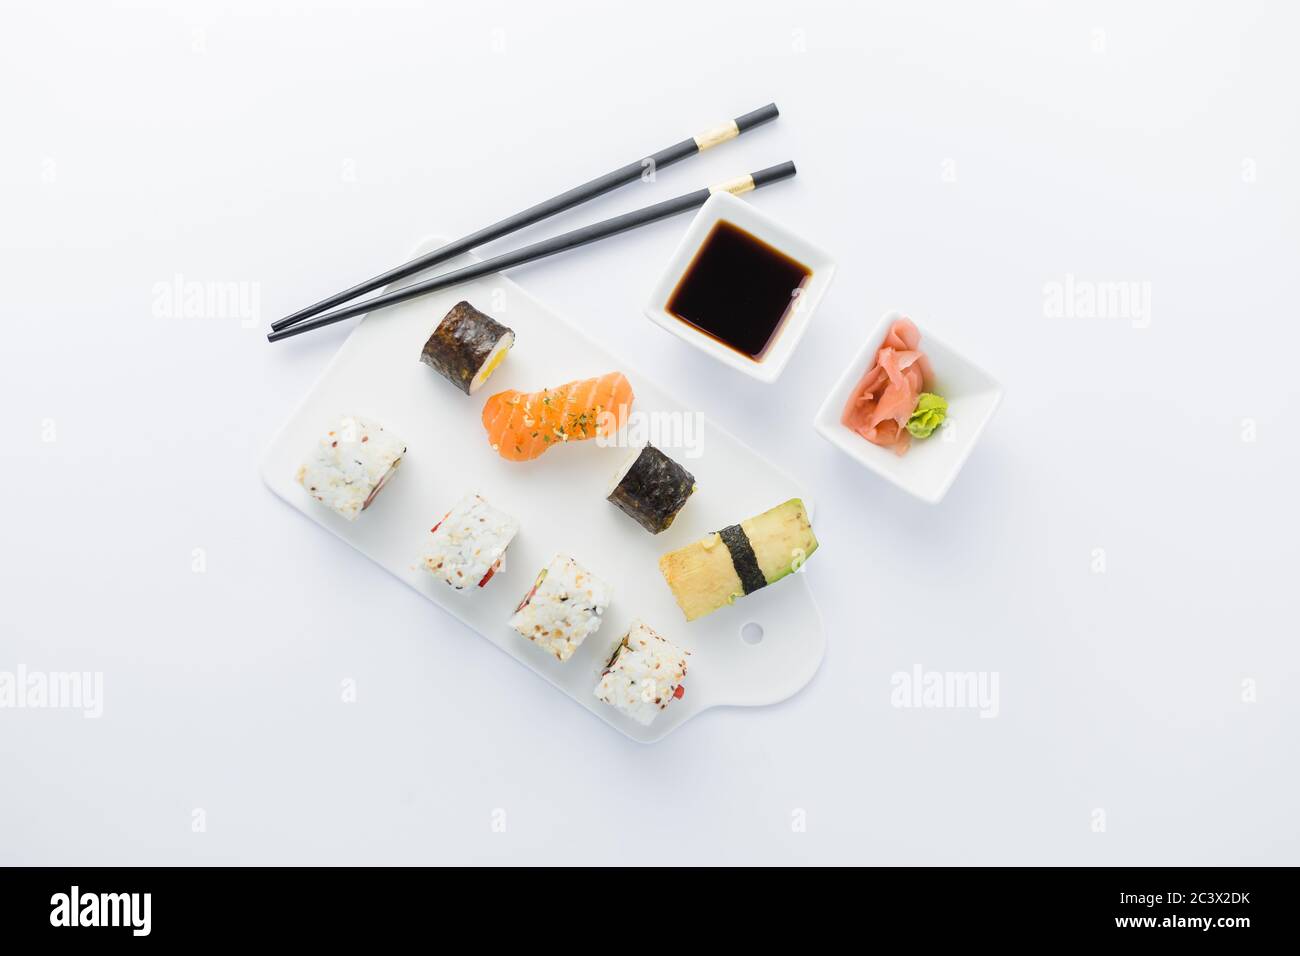 Plat de sushi japonais sur fond blanc. Espace pour la copie. Banque D'Images